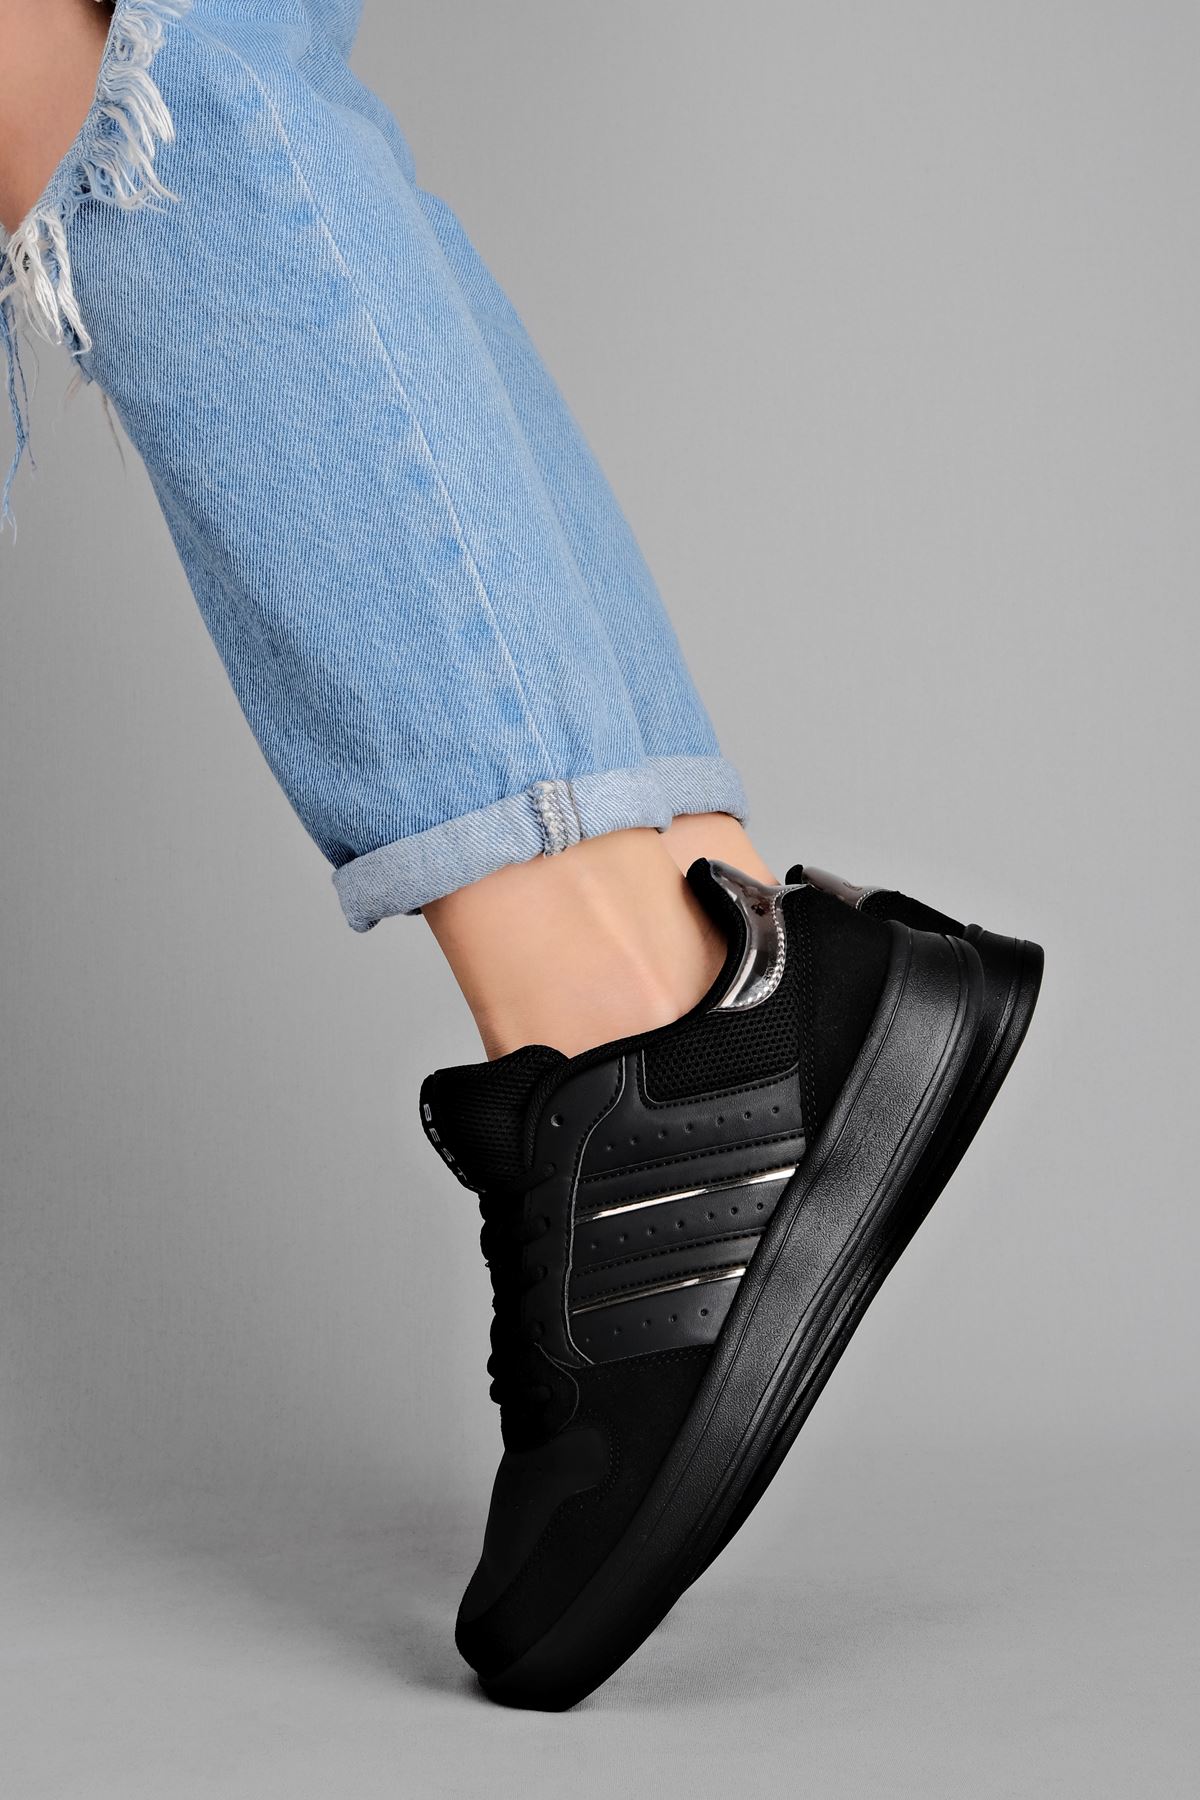 Ophelia Kadın Spor Ayakkabısı-siyah